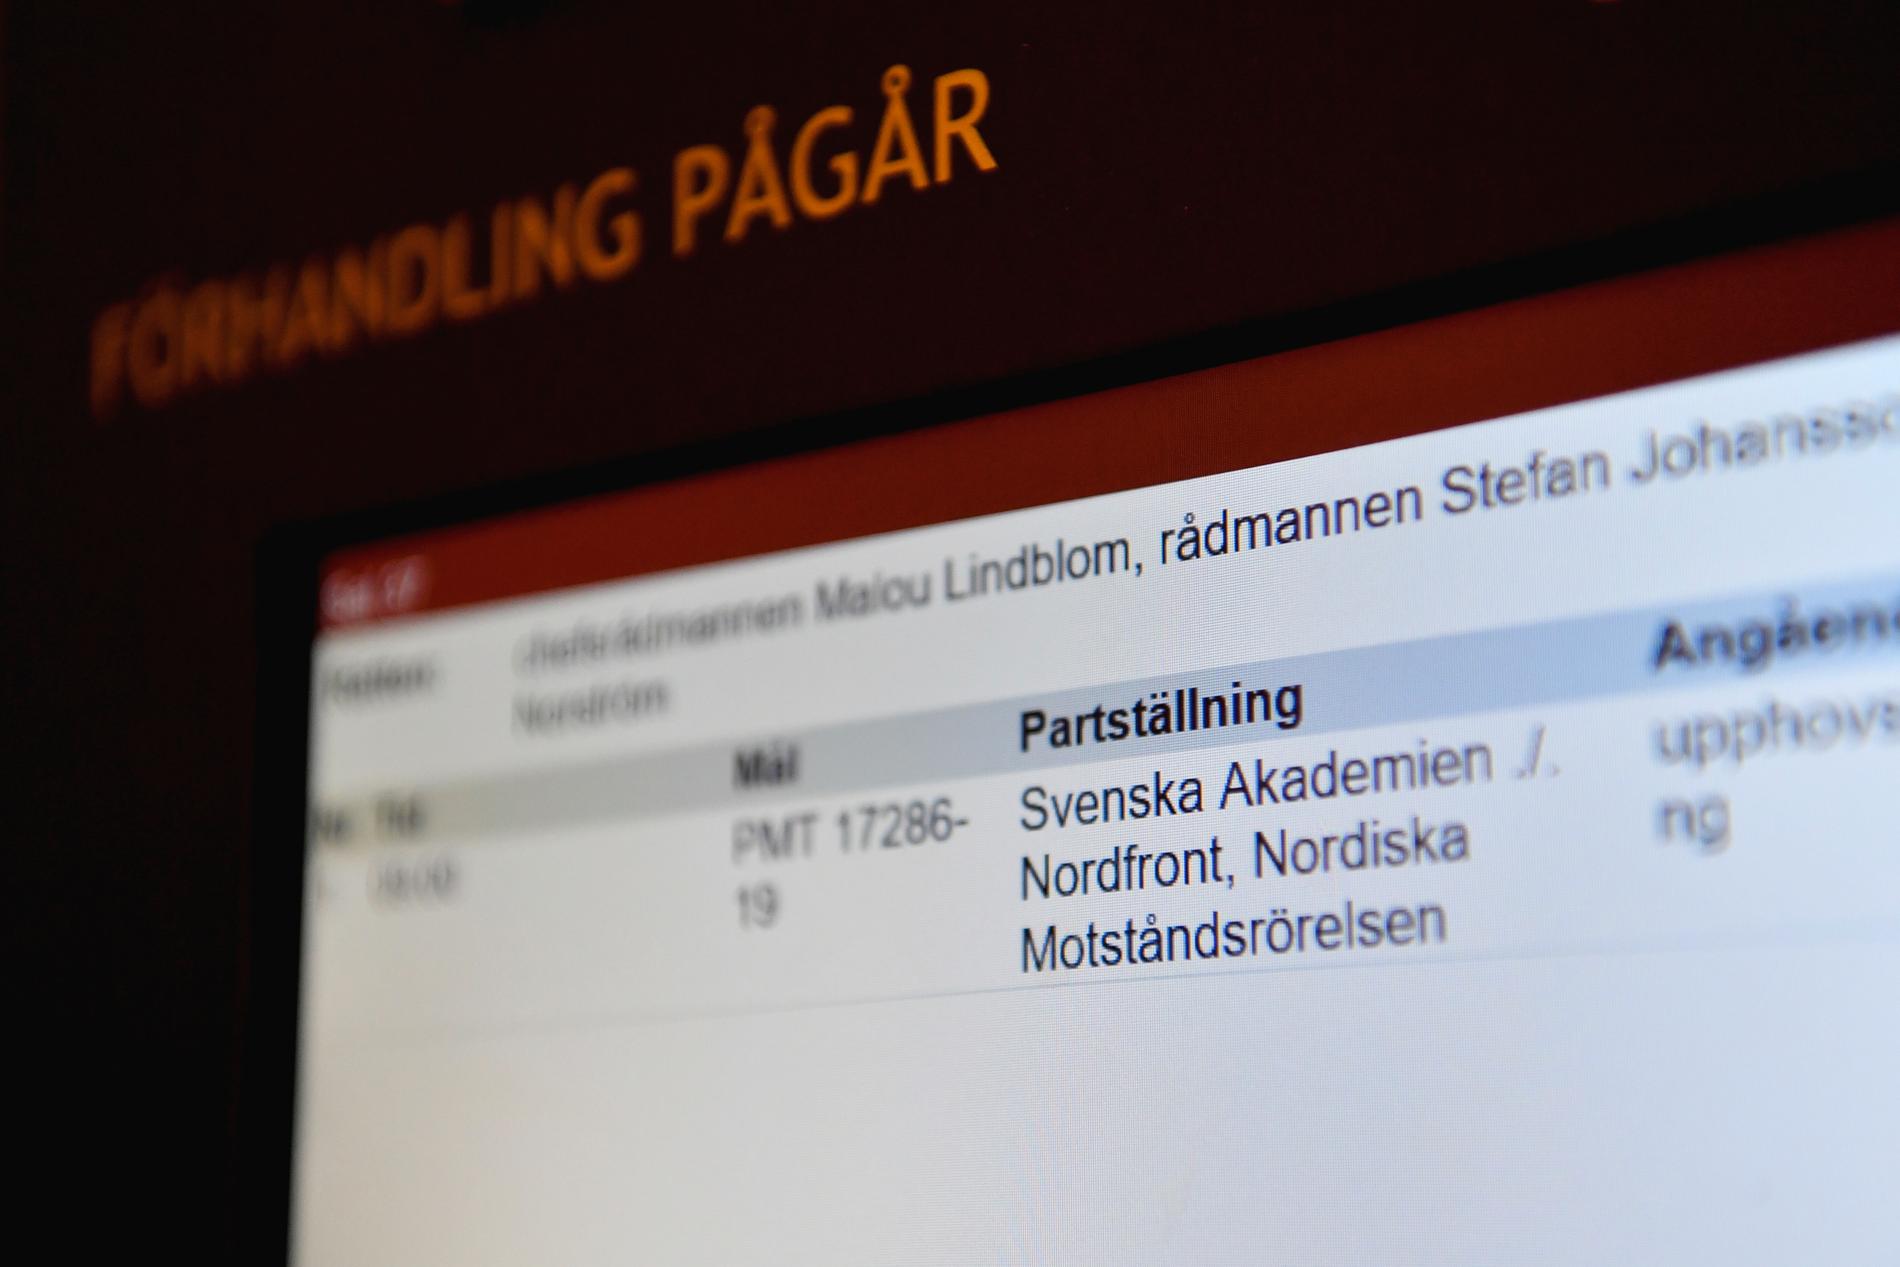 NMR och Nordfront yrkar på att tingsrätten ska avvisa de anklagelser som presenteras av Svenska Akademien.